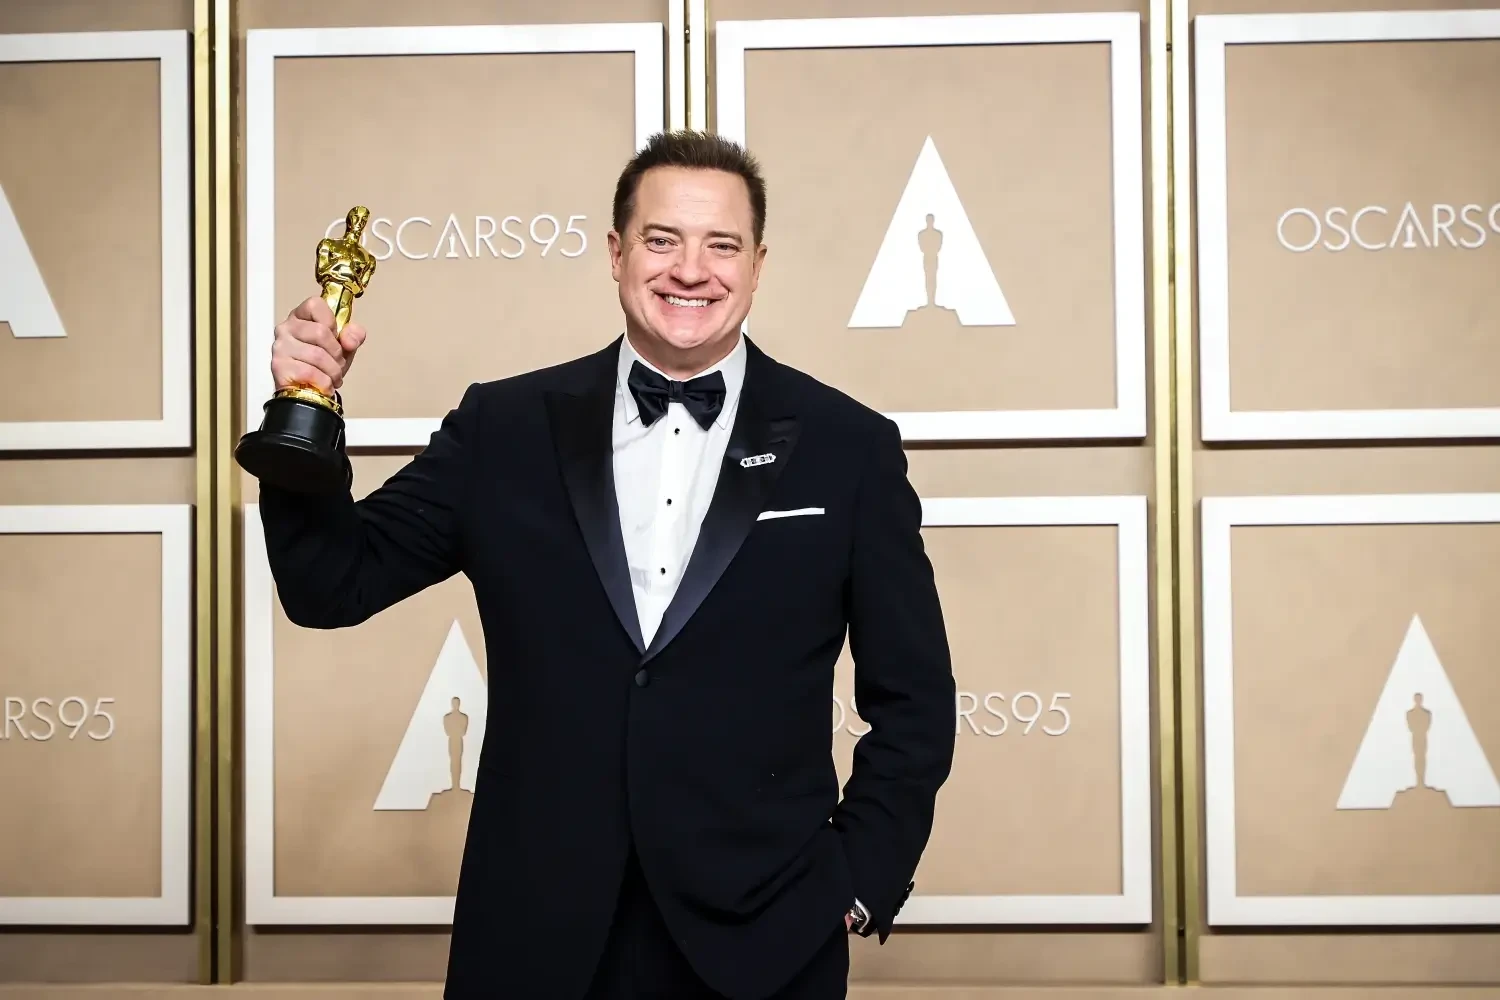 Fraser holding an Oscar